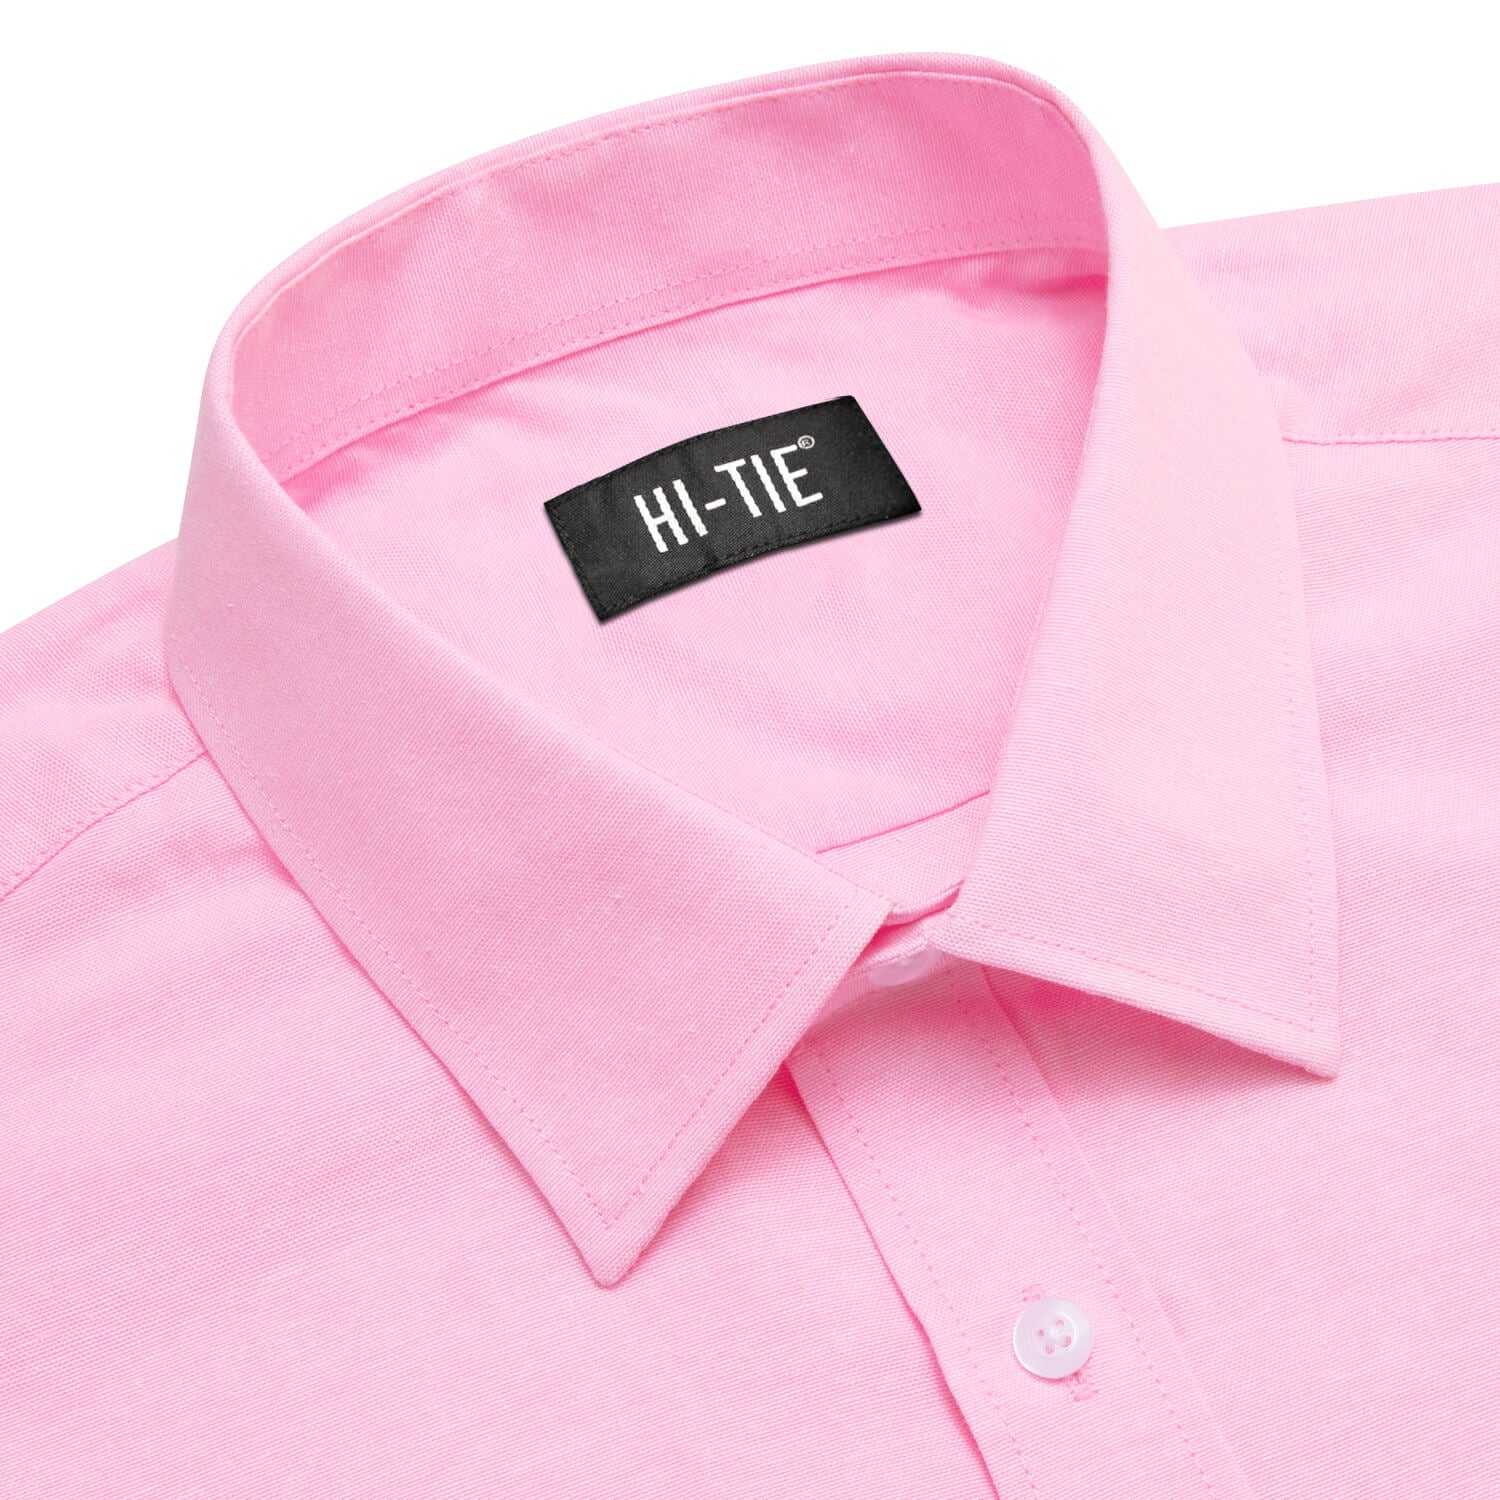 Hi-Tie Button Down Shirt Light Pink Solid Silk Men's Dress Shirt